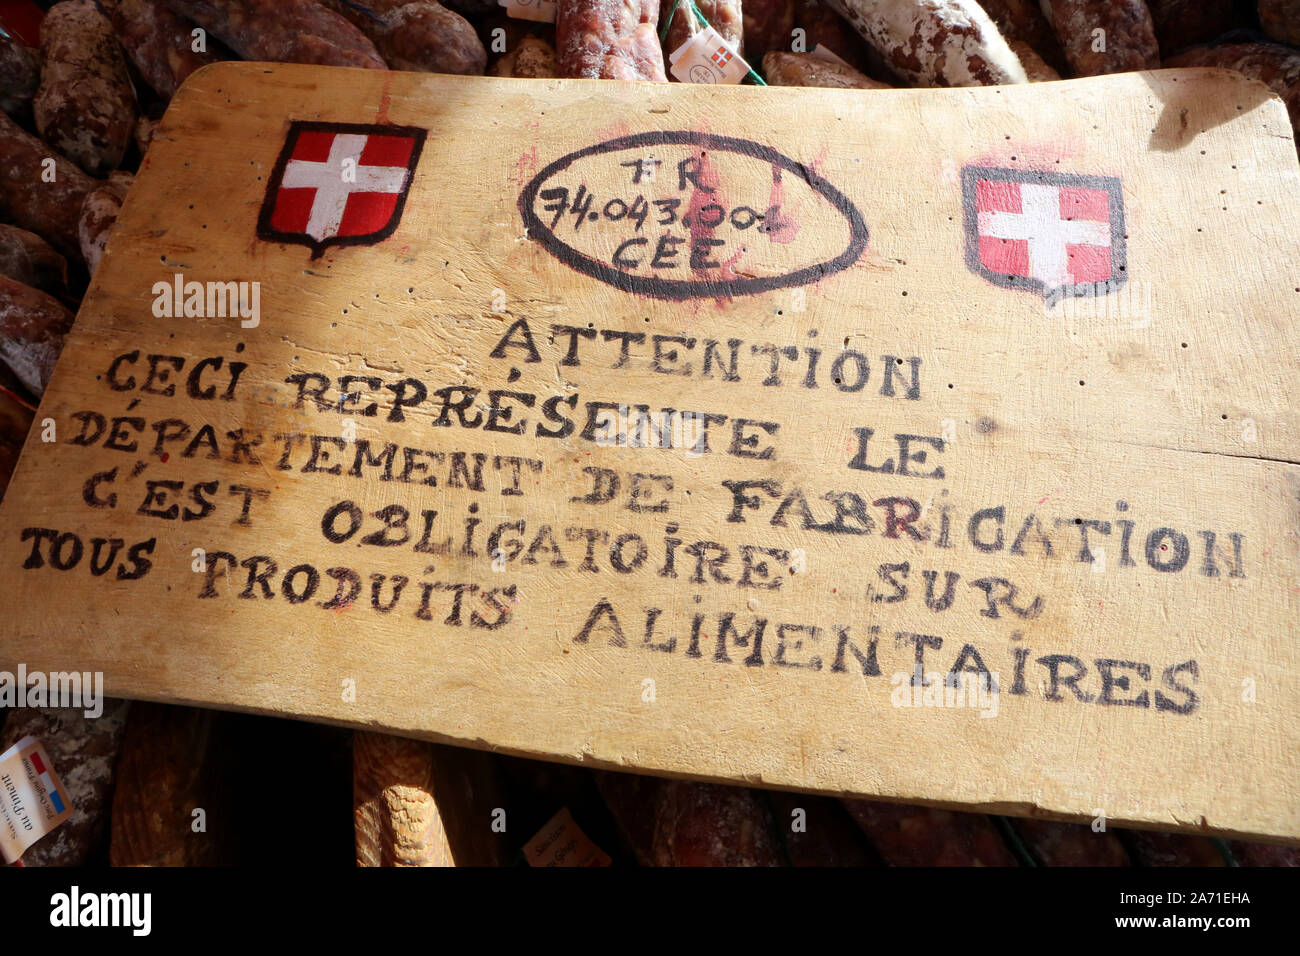 Panneau en bois expliquant que le département de fabrication est obligatoire sur tous les produits alimentaires. Stock Photo